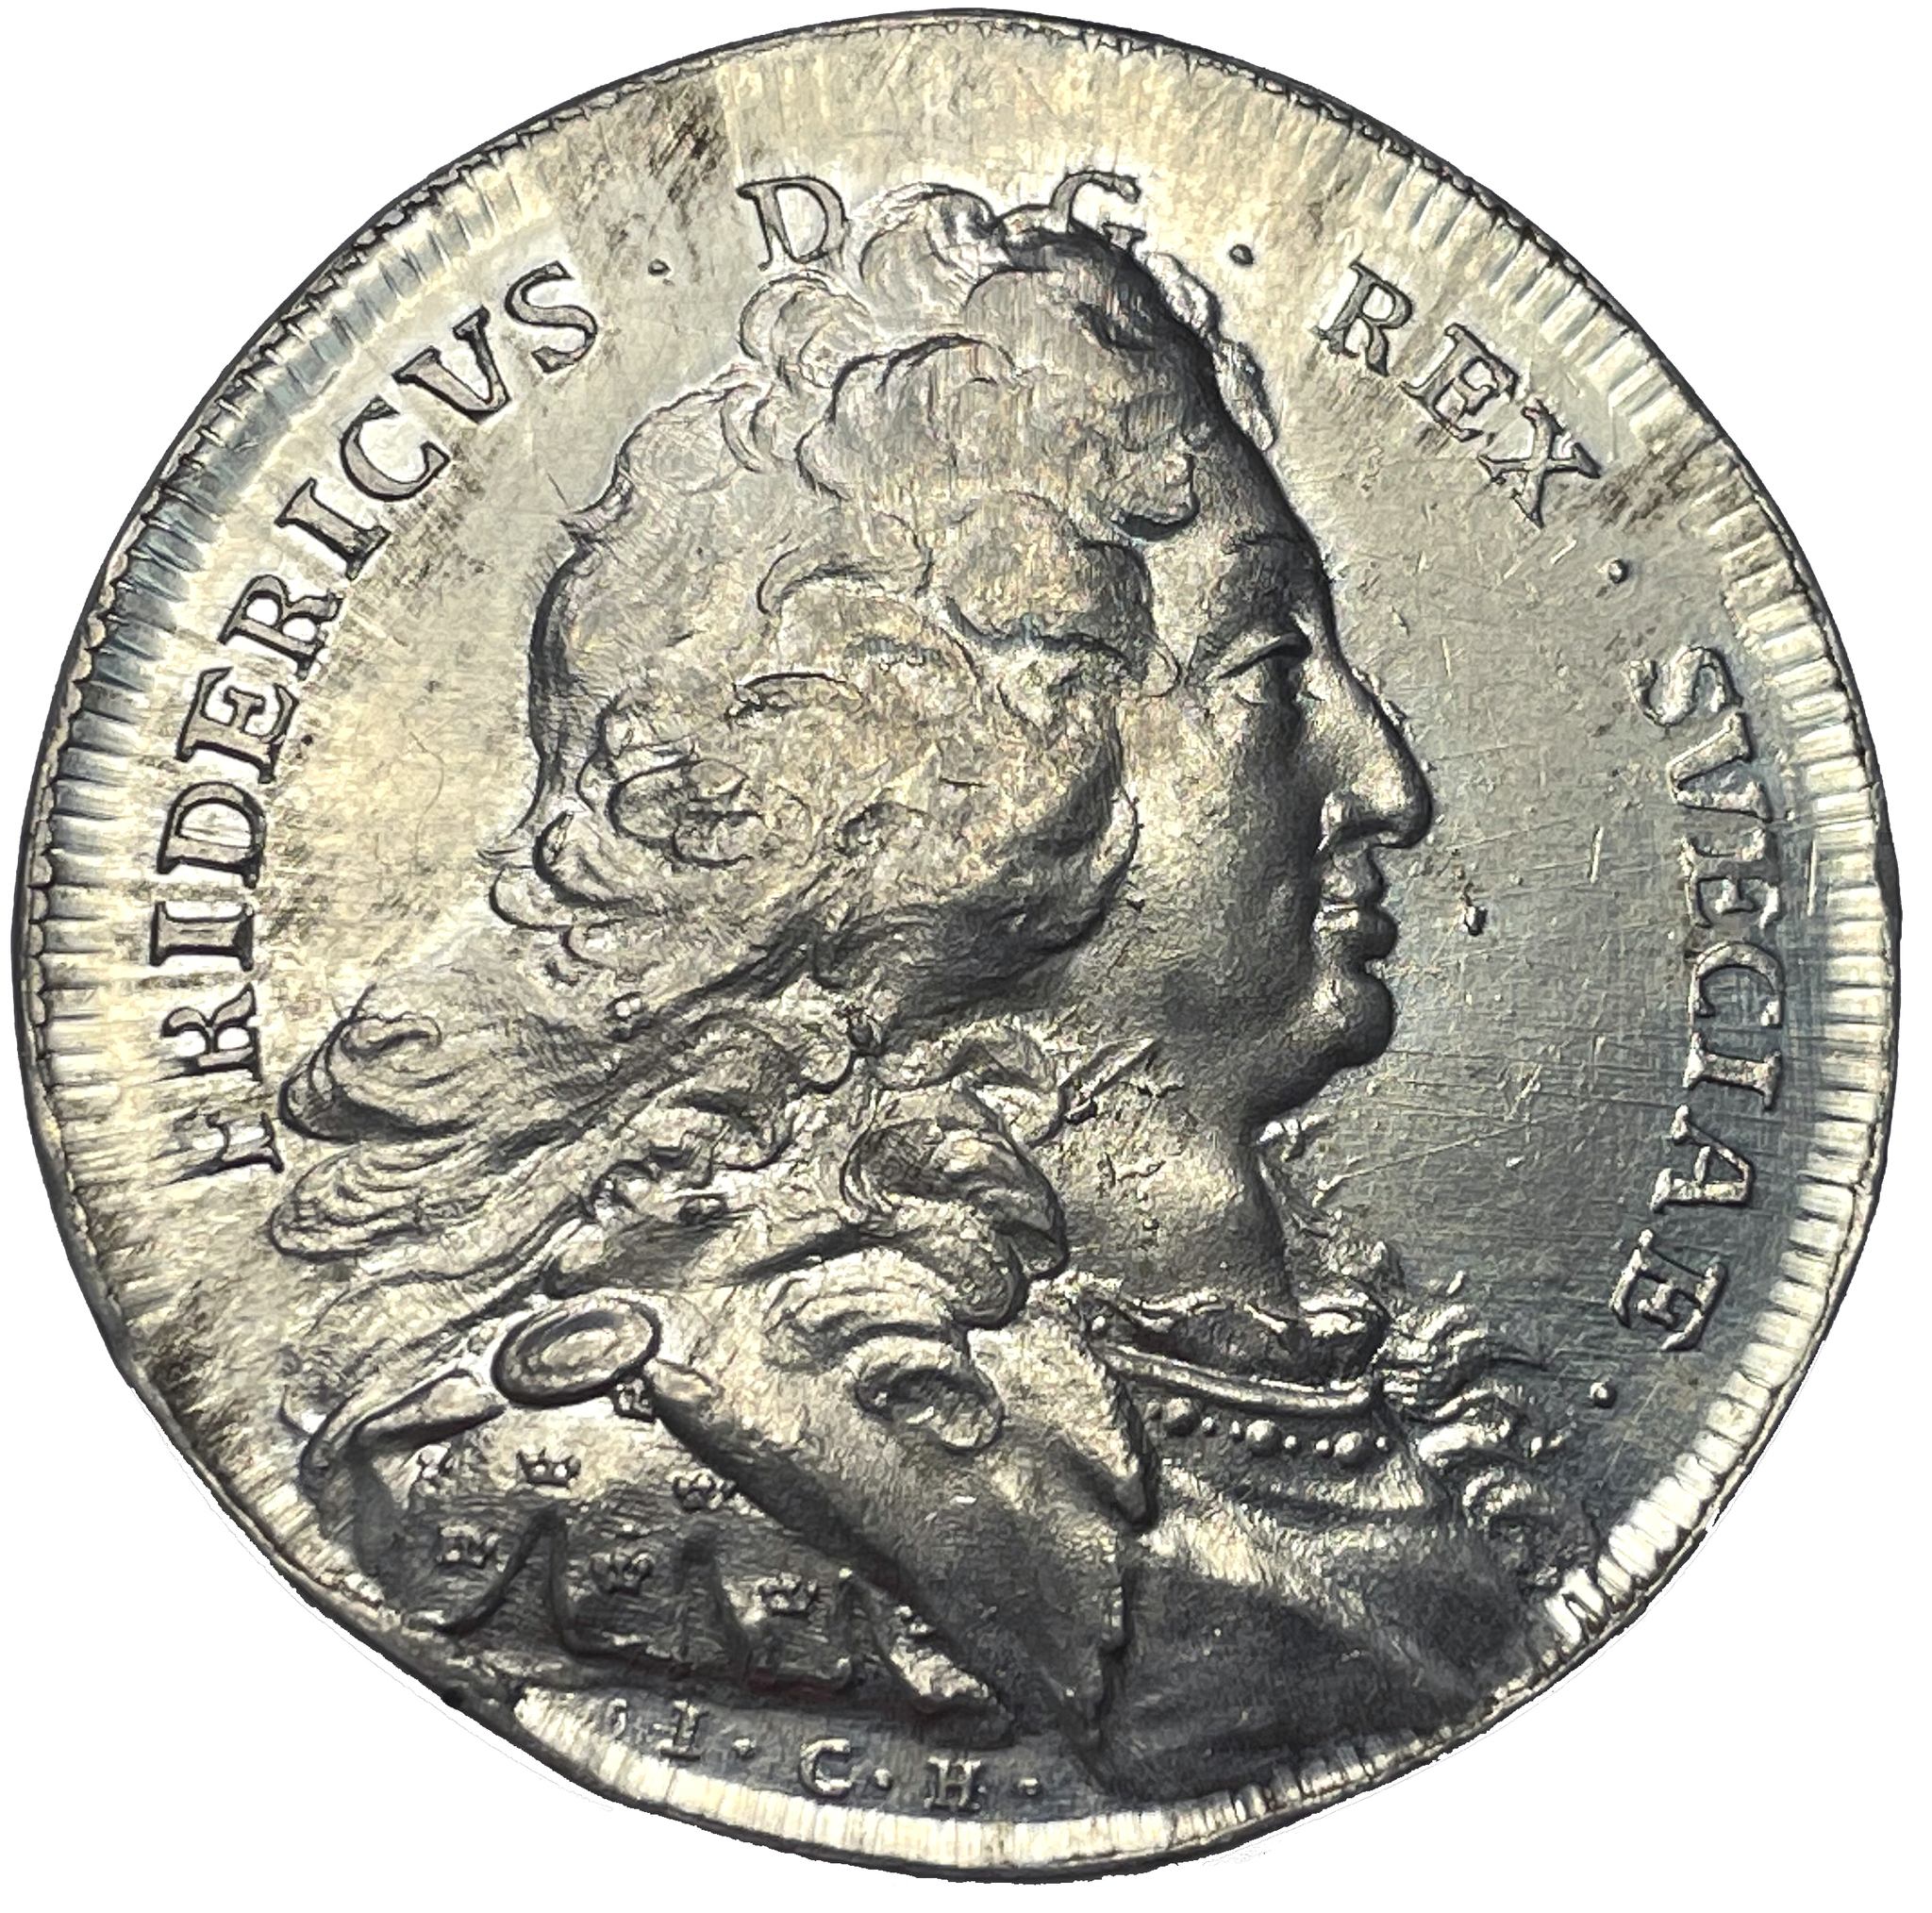 Fredrik I - Hemkomsten från Hessen 1731 av Johan Carl Hedlinger - Toppexemplar - Mycket sällsynt